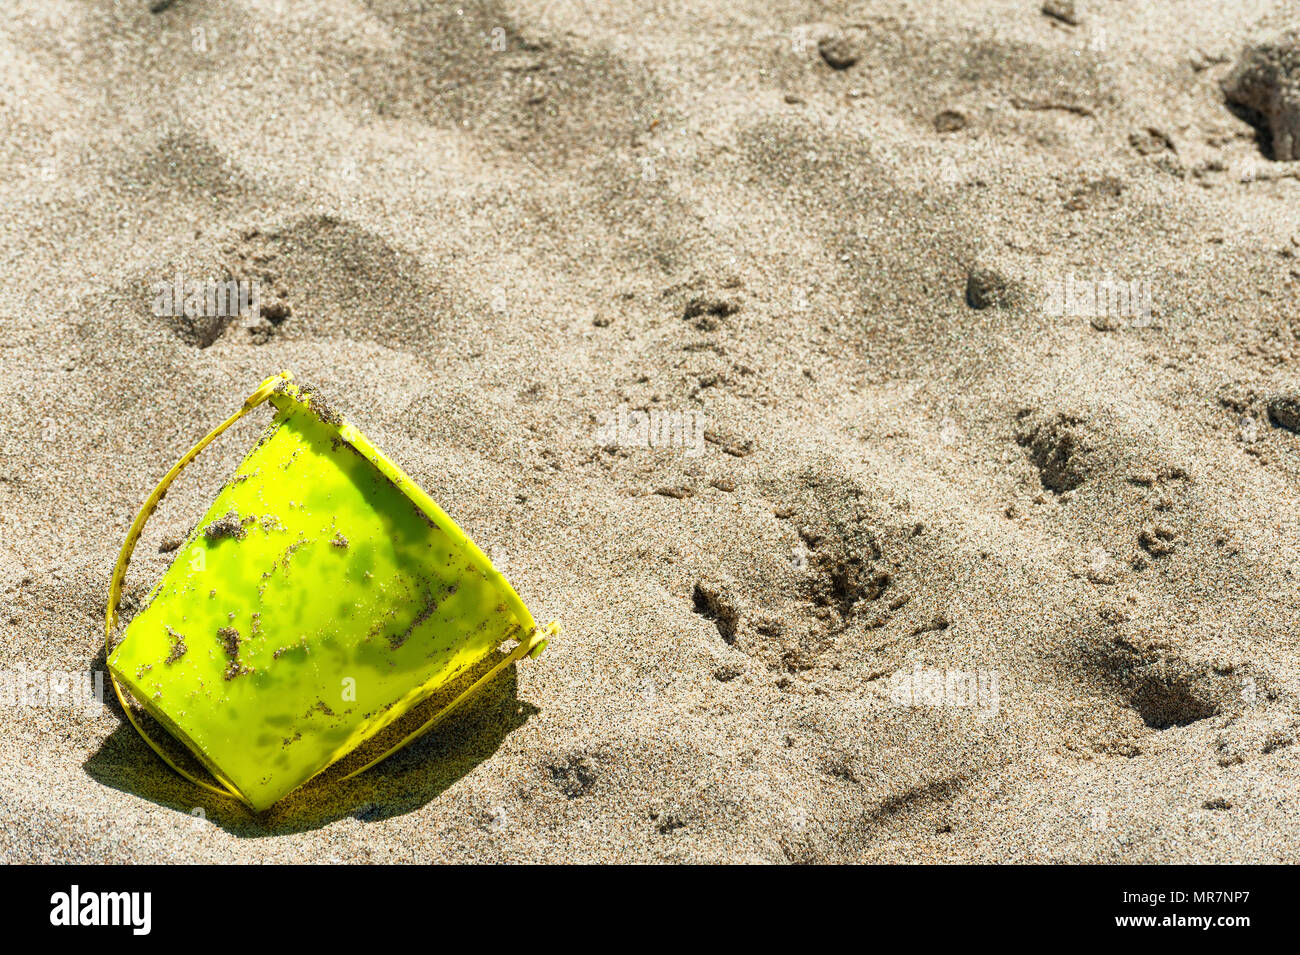 Primer plano de un amarillo cuchara usada para jugar en una playa costera arenosa. Foto de stock